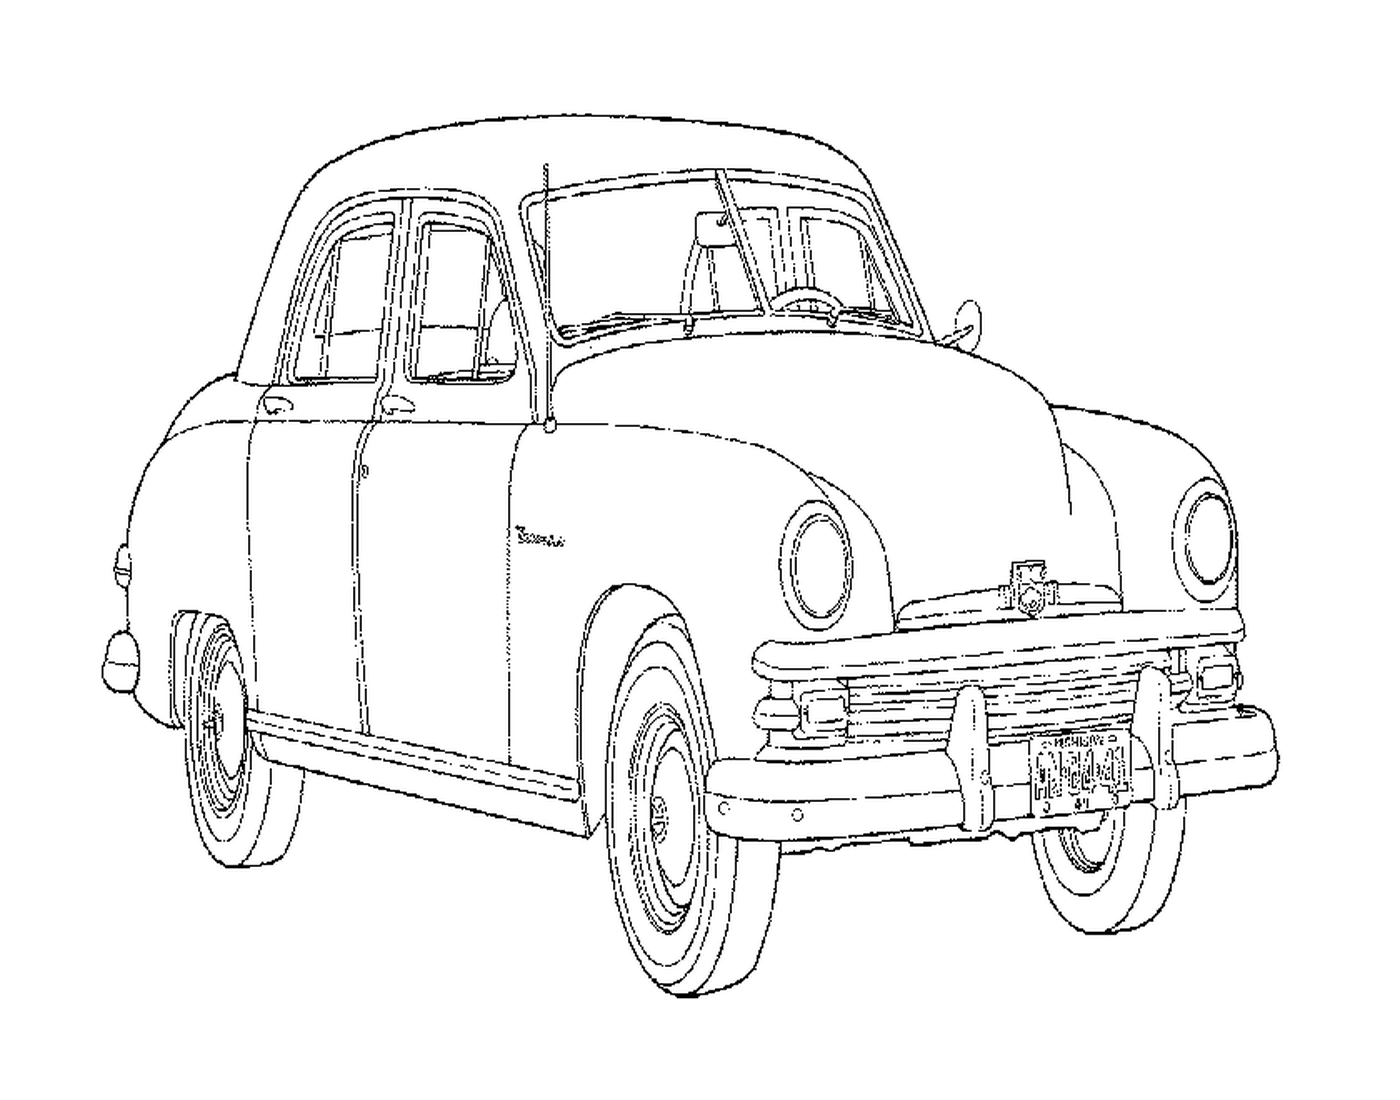  Auto degli anni '60 